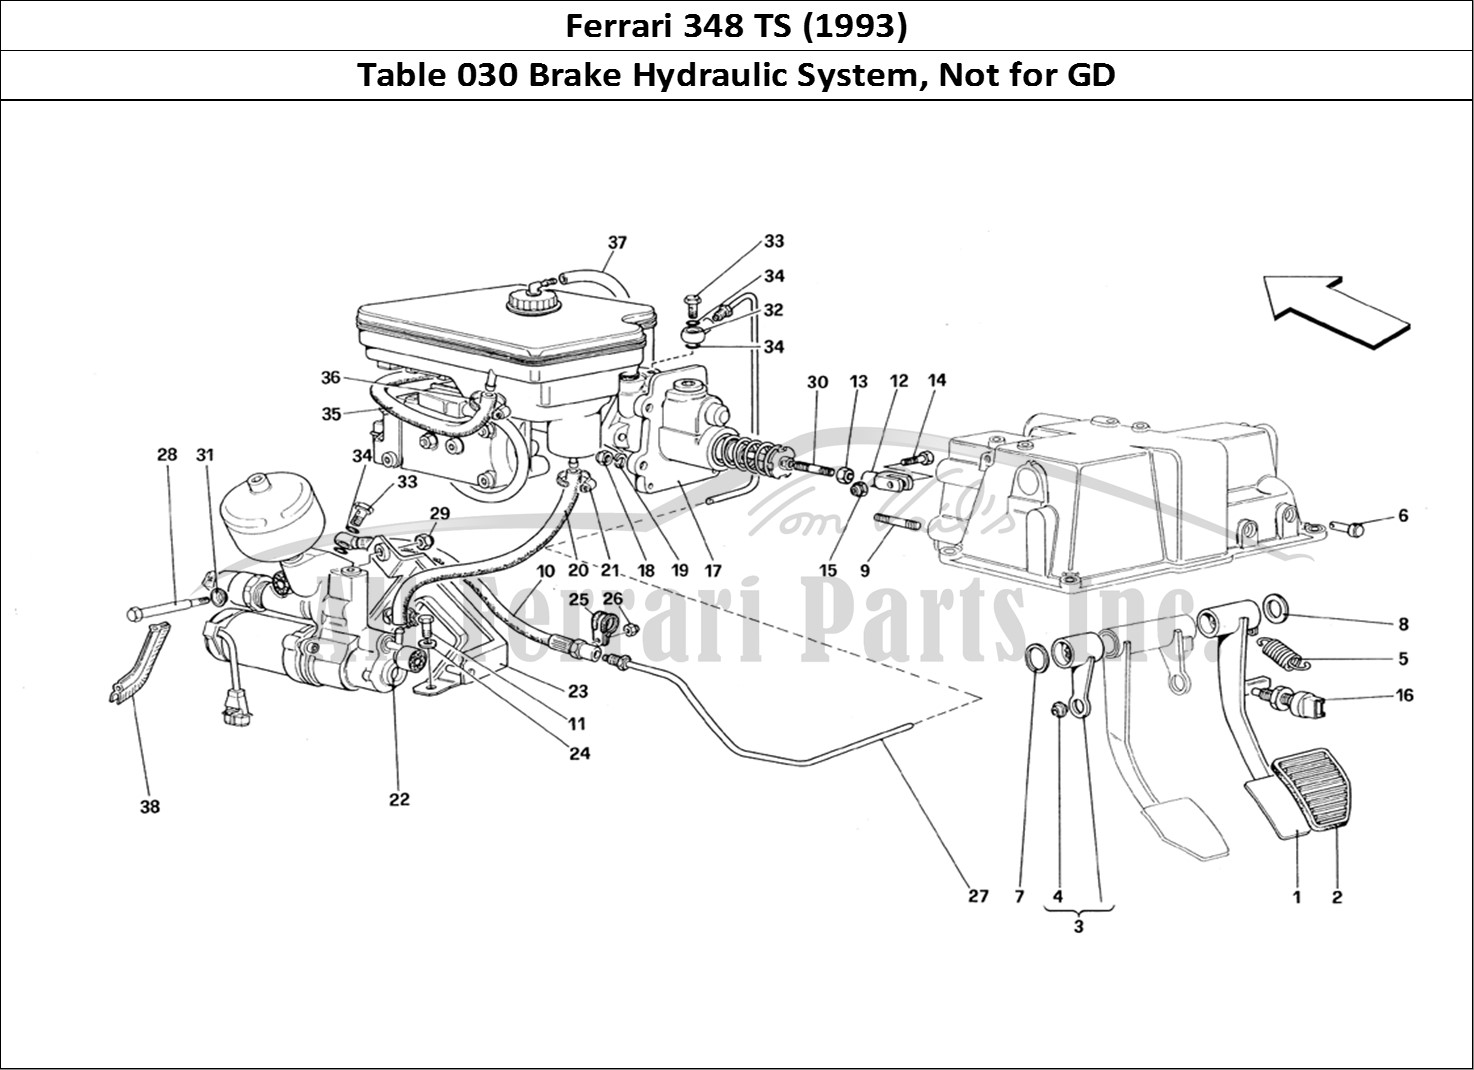 Ferrari Parts Ferrari 348 TB (1993) Page 030 Brake Hydraulic System -